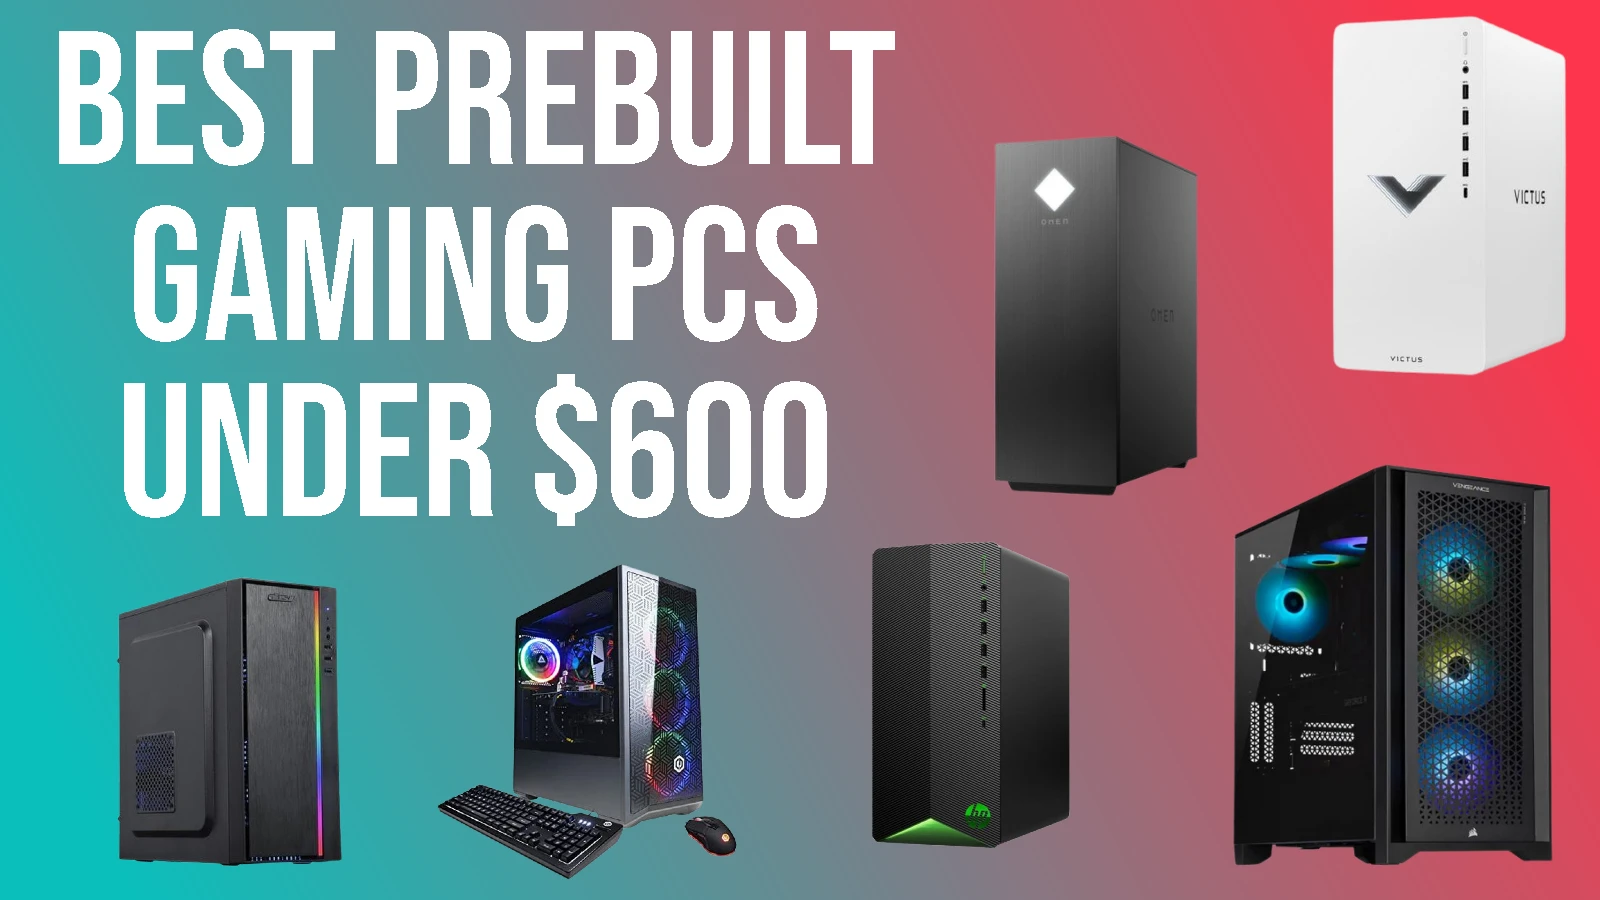 Best prebuilt gaming PCs under $600